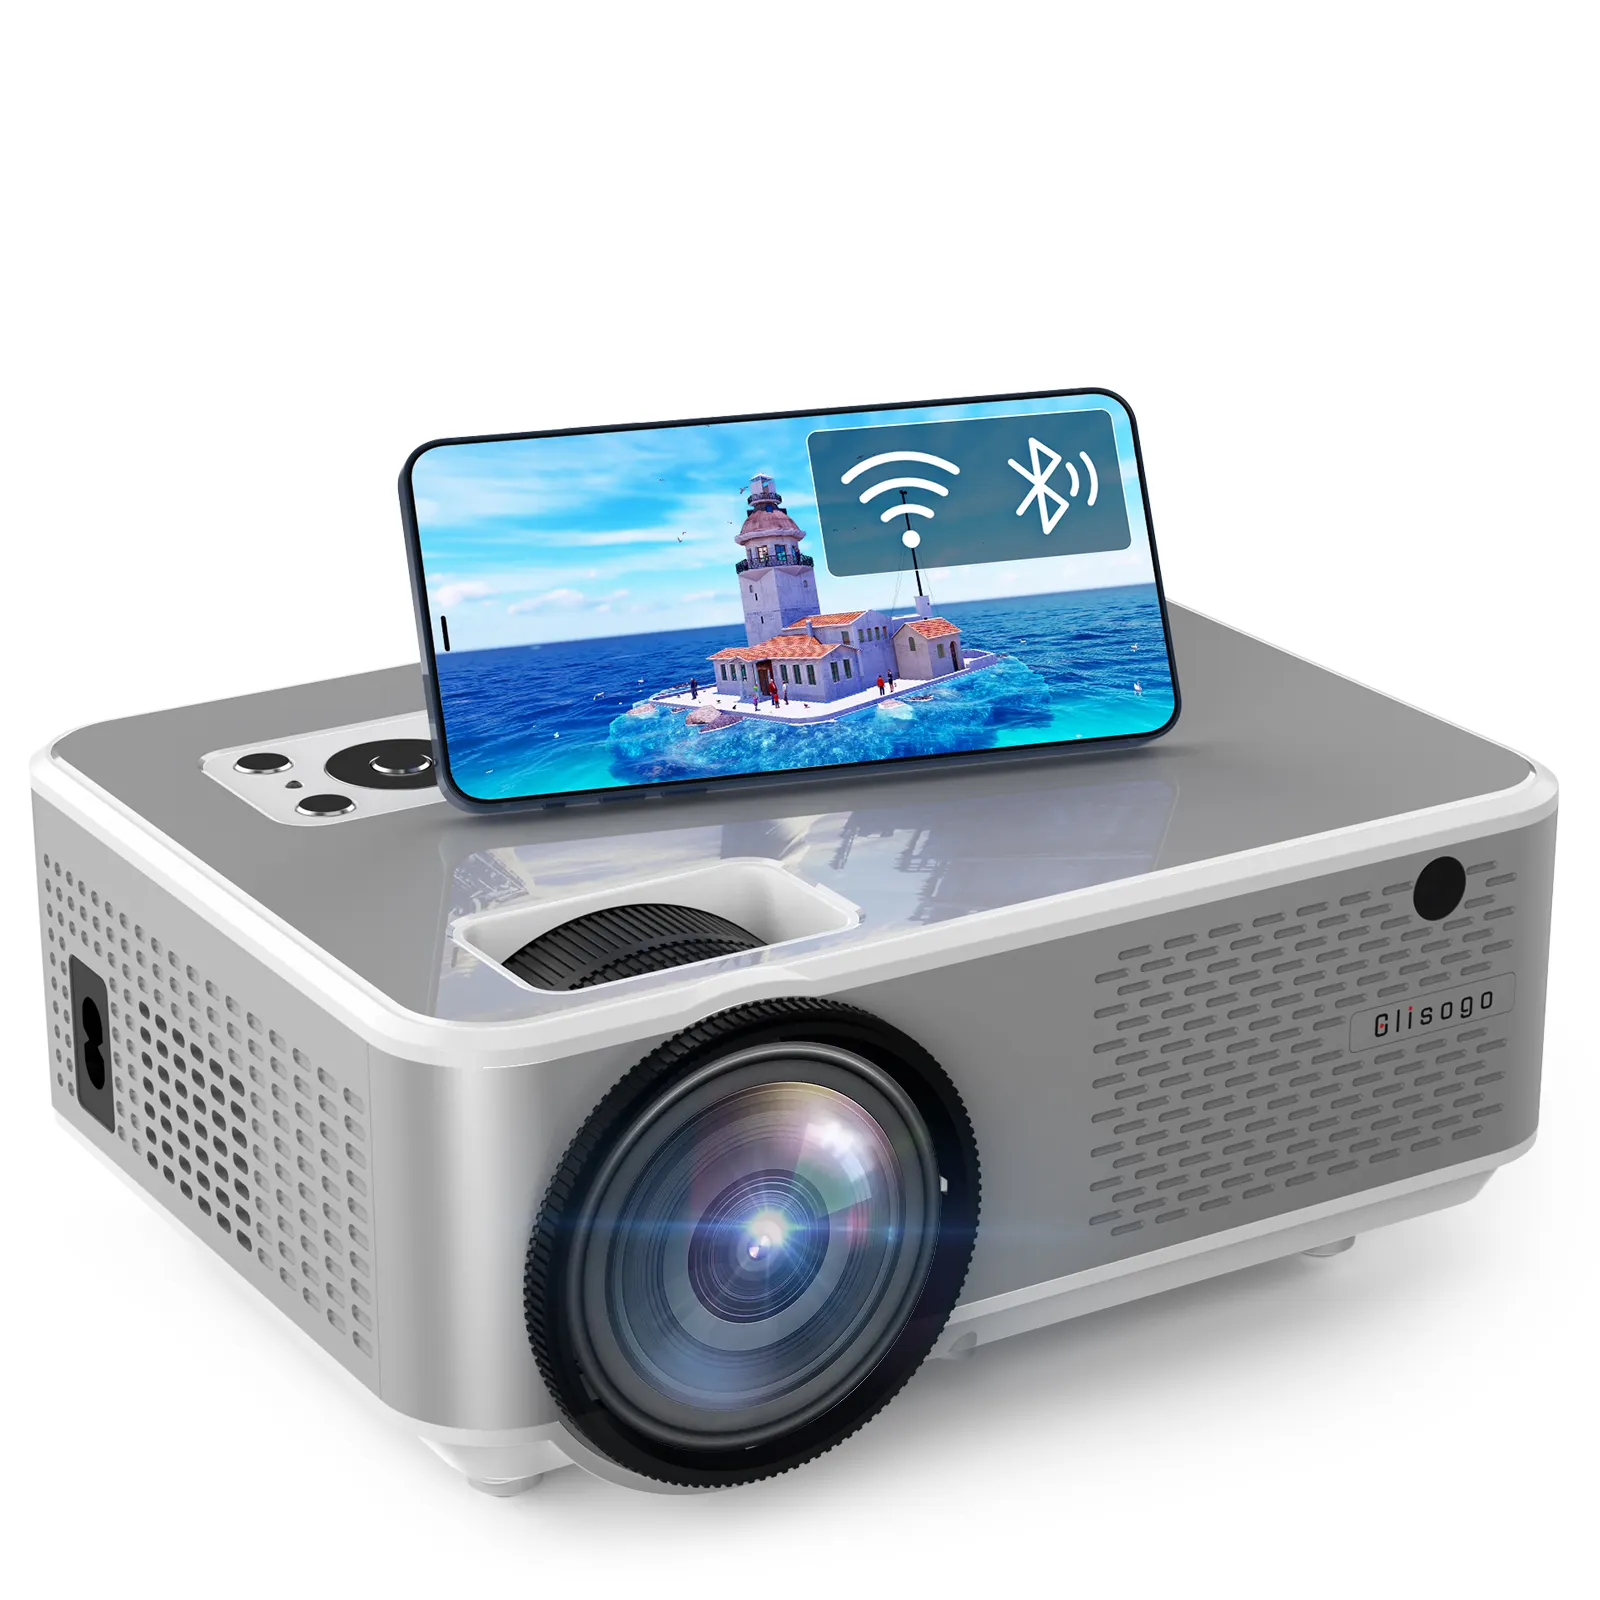 C9 gelang Mini proyektor layar proyektor Video cermin layar proyektor portabel Video Hd konektor sel proyektor